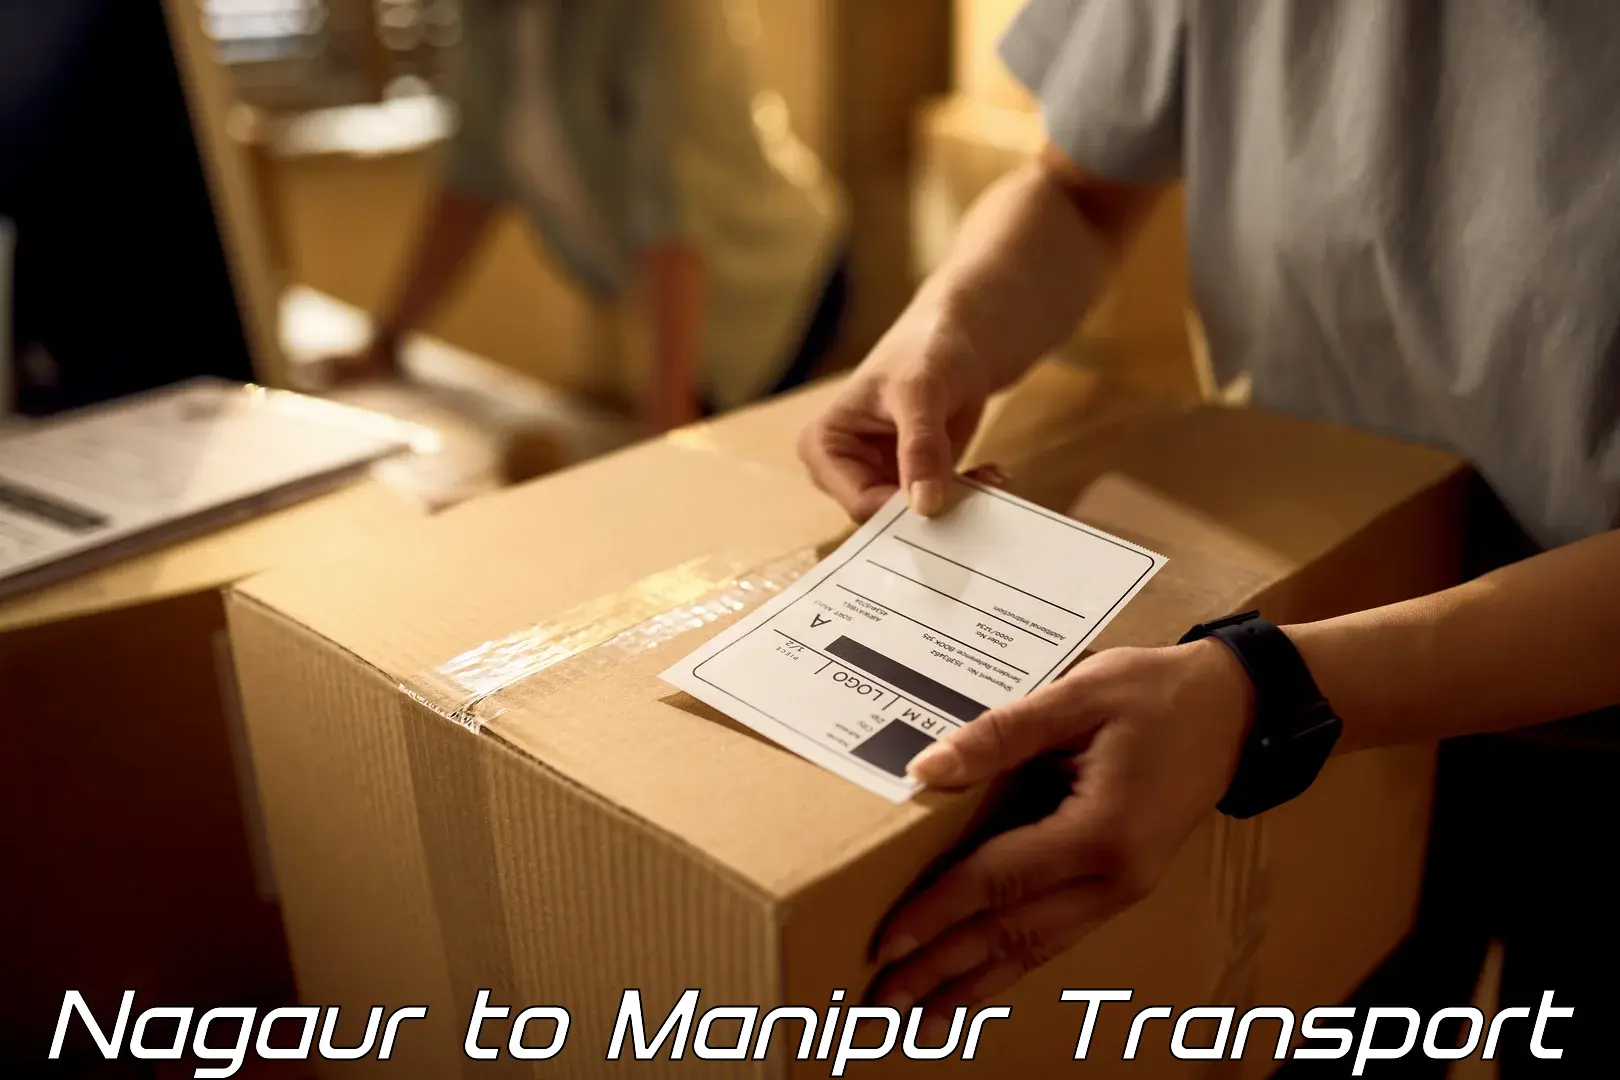 Shipping partner Nagaur to Moirang